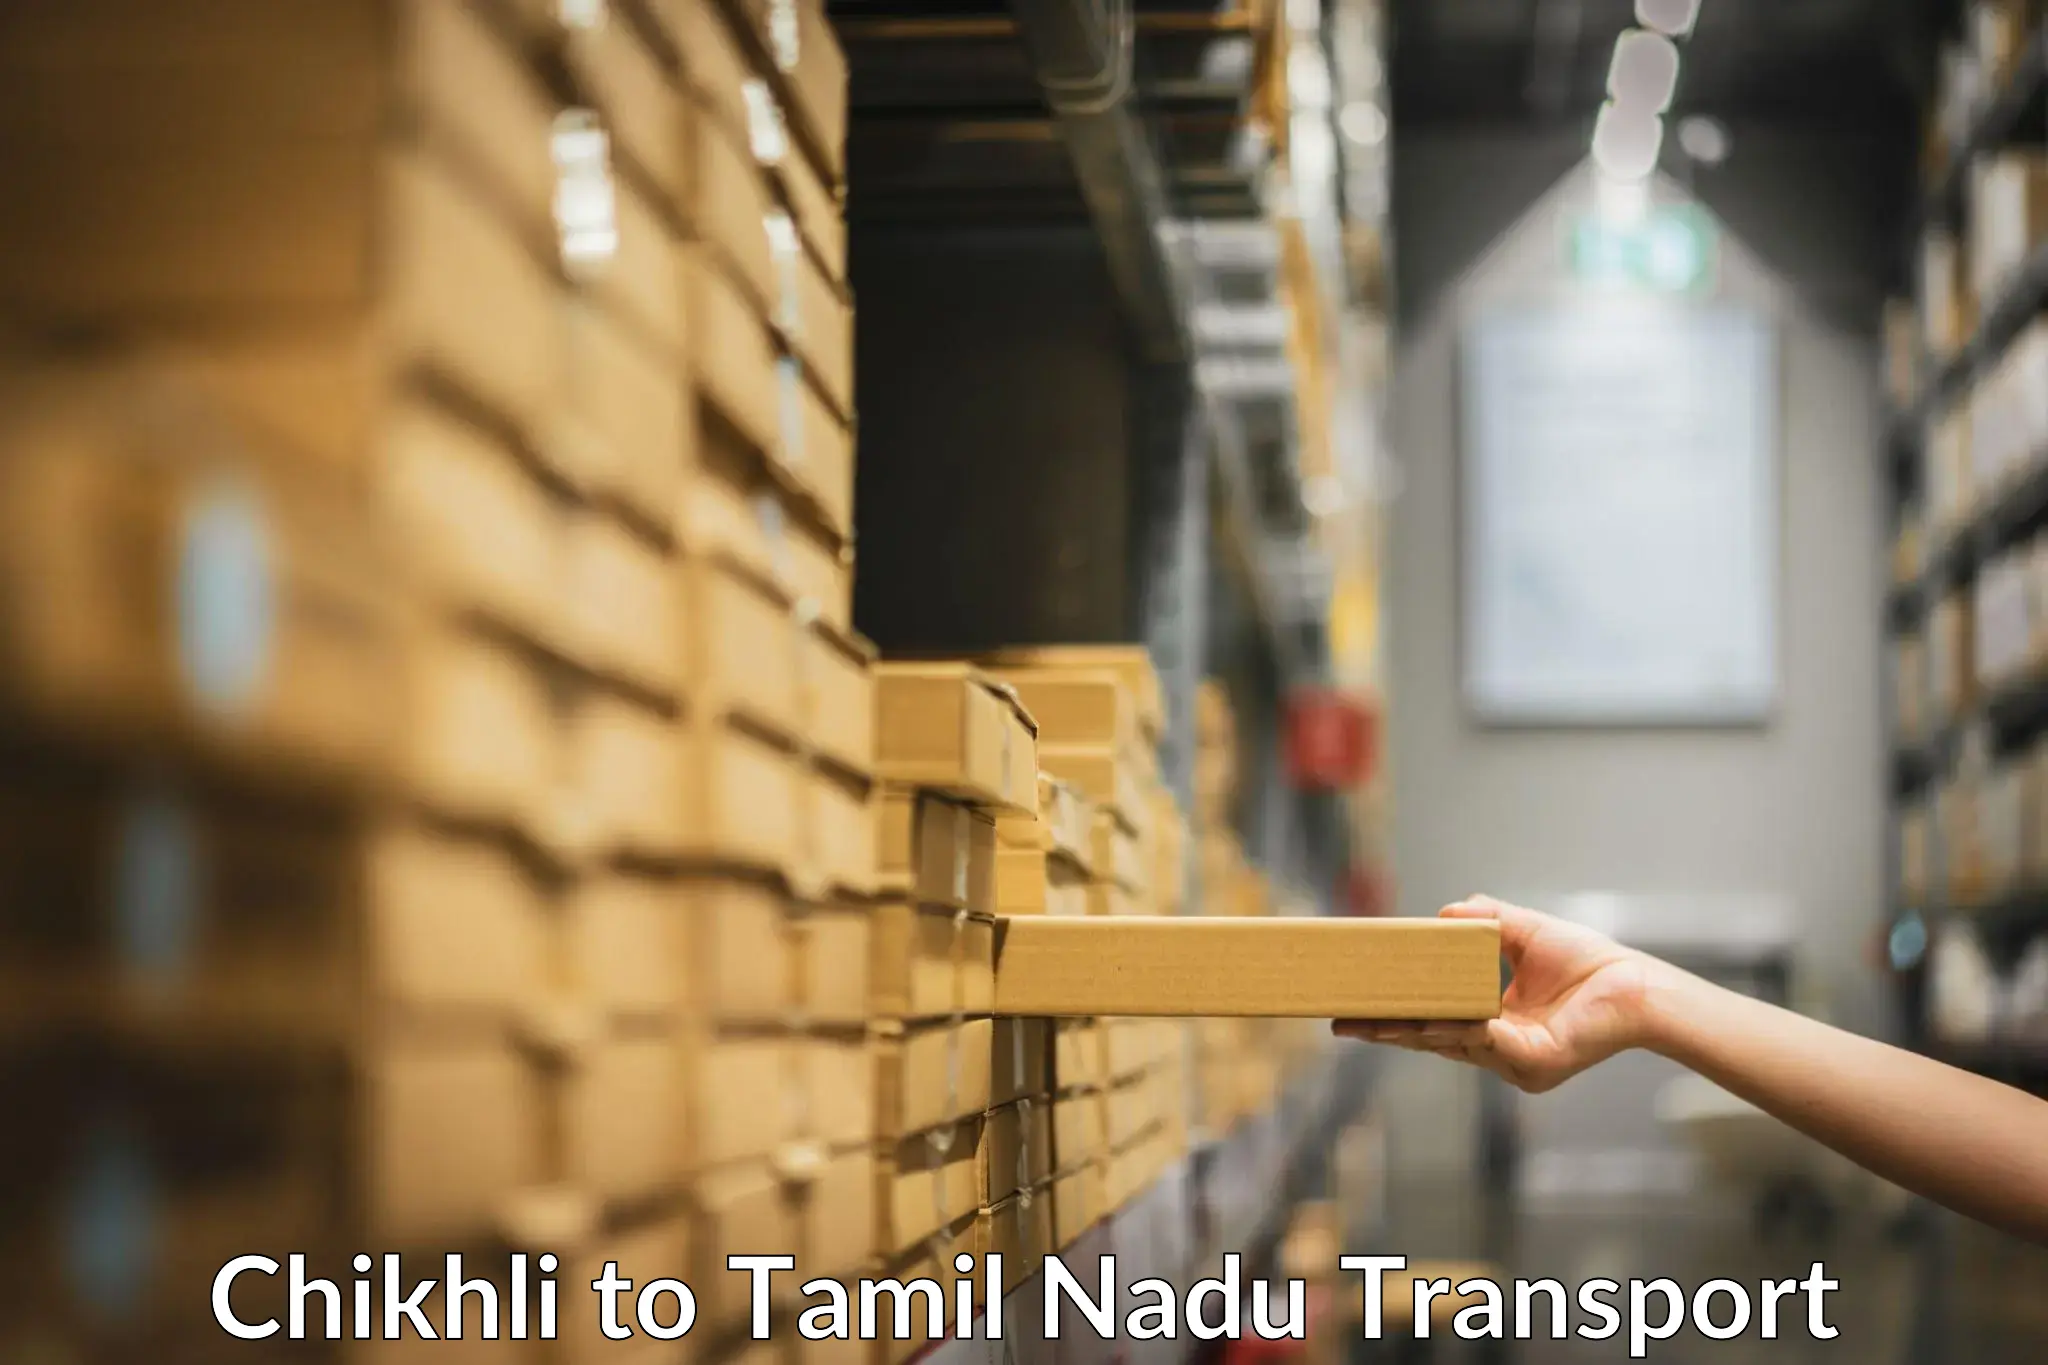 Commercial transport service Chikhli to Tirunelveli